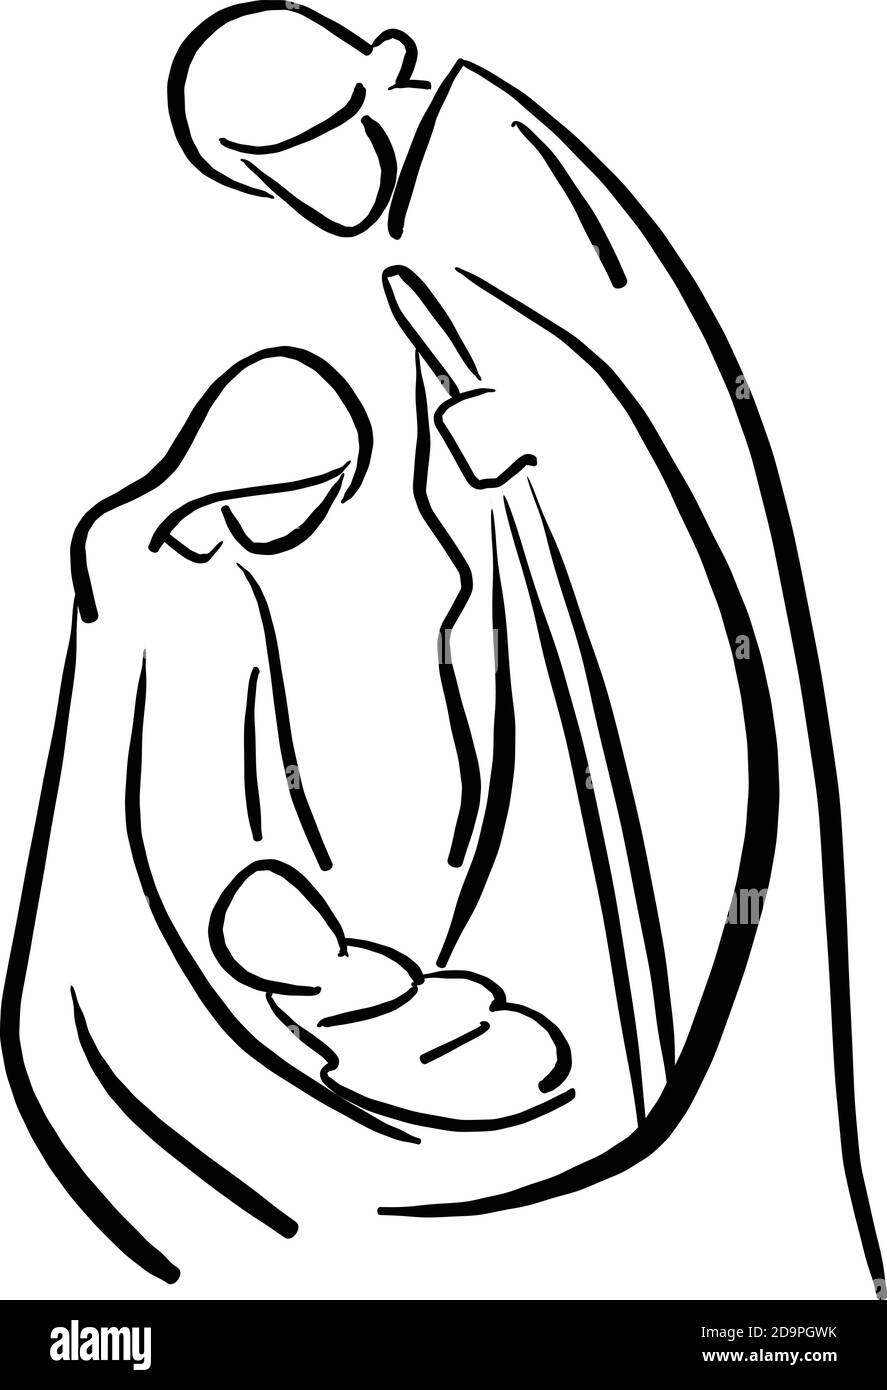 Presepe scena con Sacra Famiglia vettore illustrazione schizzo doodle mano disegnata con linee nere isolate su sfondo bianco. Tempo di Natale. Illustrazione Vettoriale